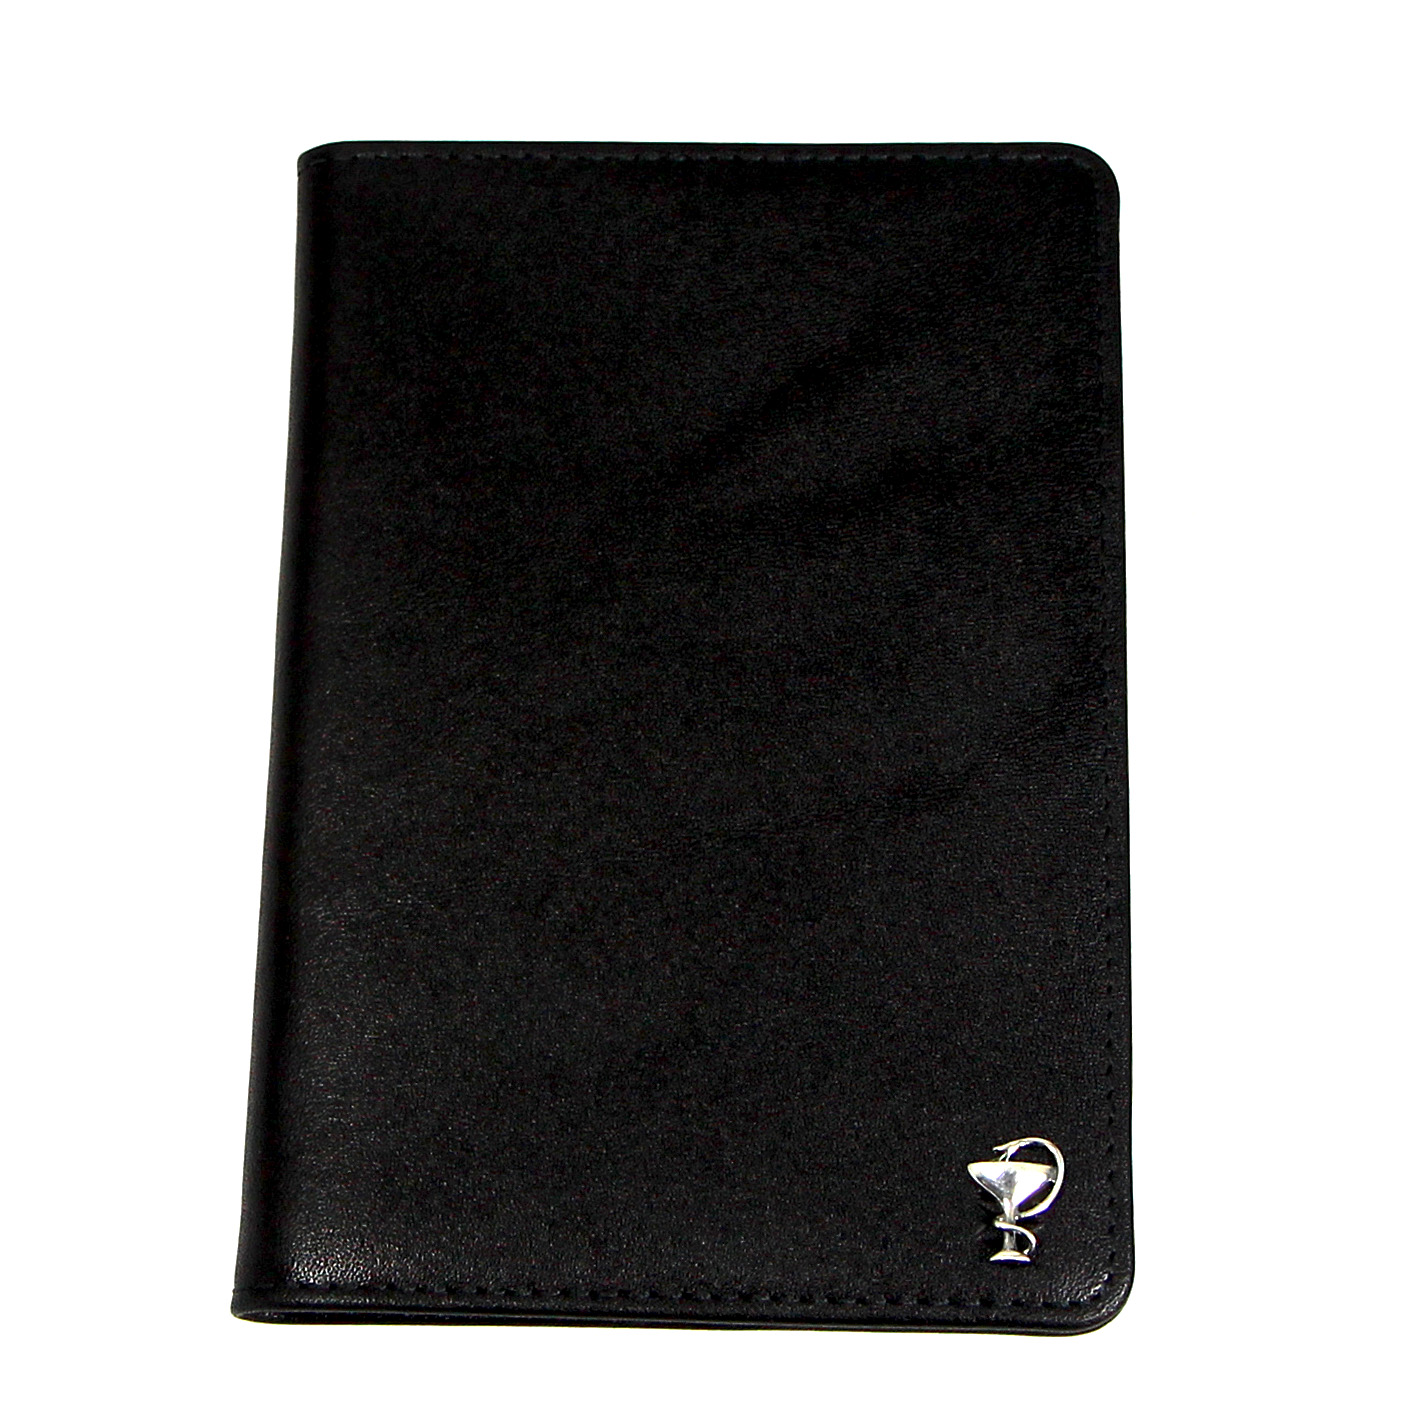 Черная кожаная обложка для паспорта для врачей SOLTAN 010 21 01 со вставкой из серебраФото 25018-01.jpg